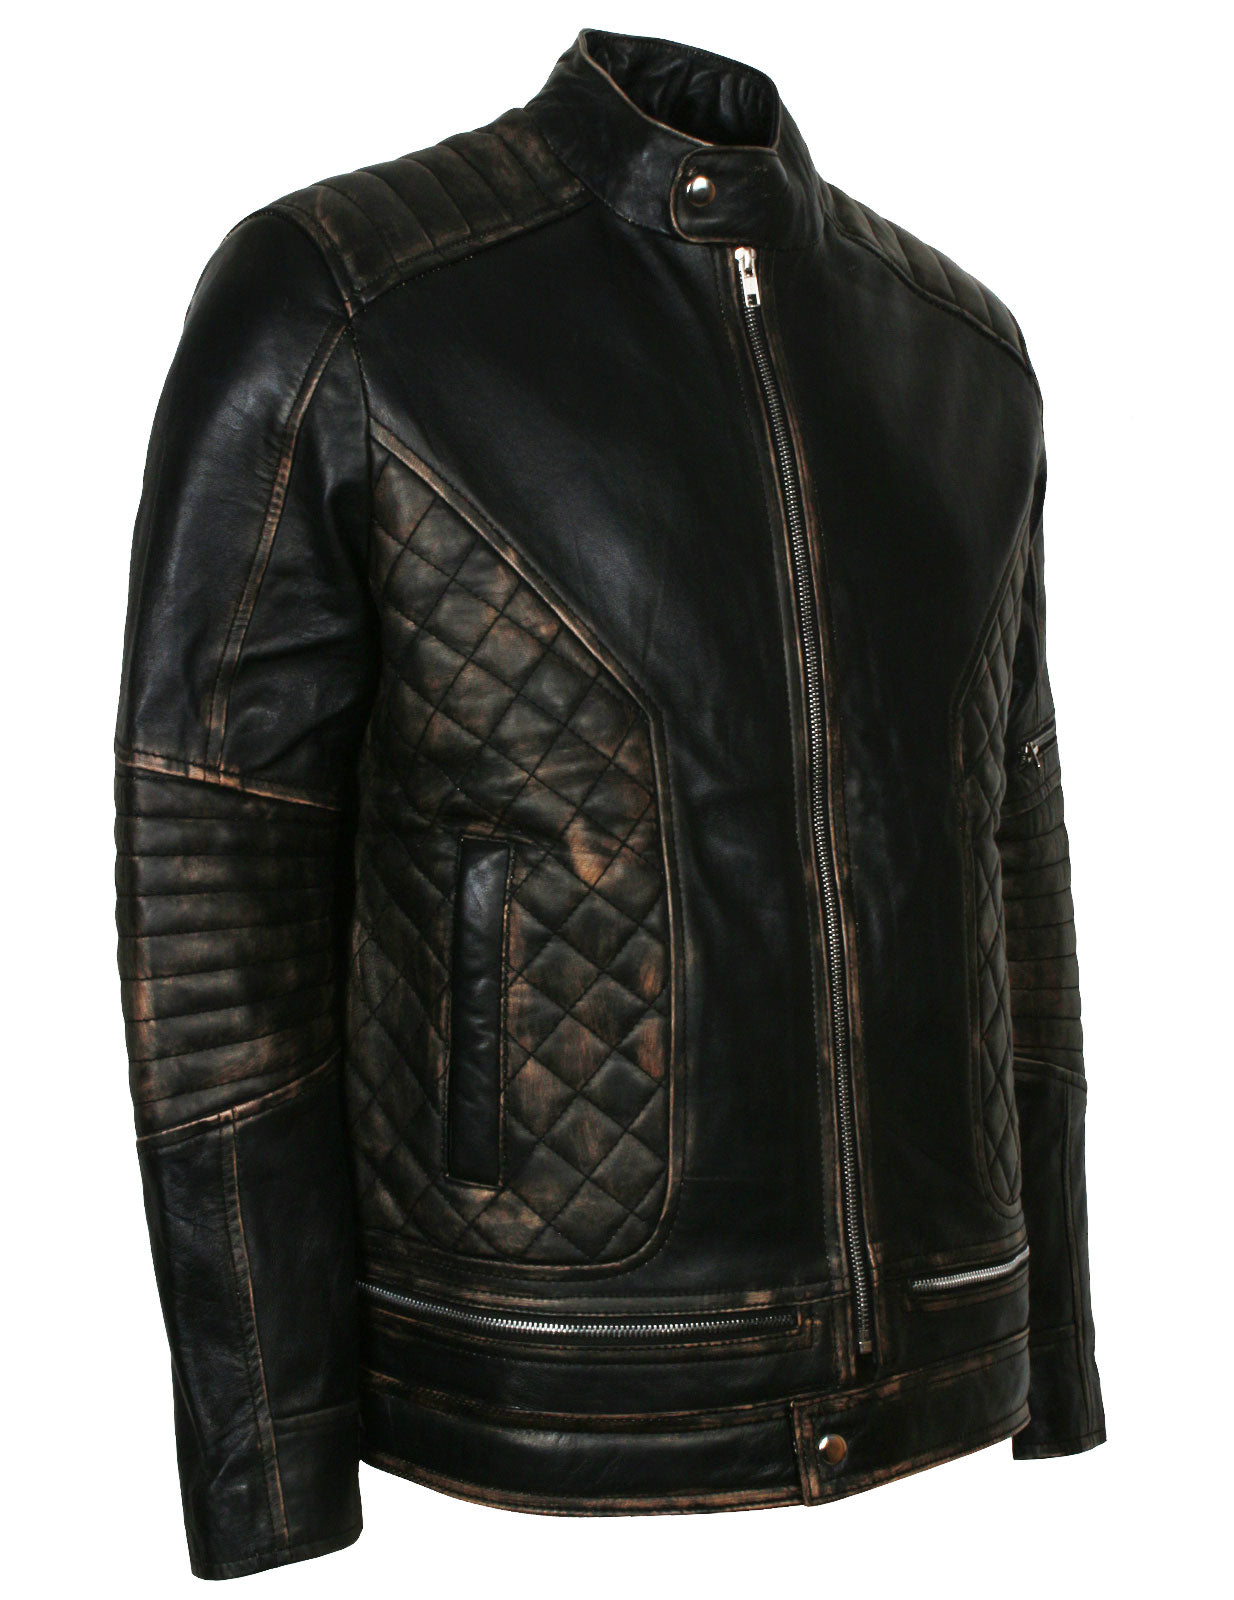 Leather jacket Bodaskins Black size 40 UK - US in Leather - 41626289